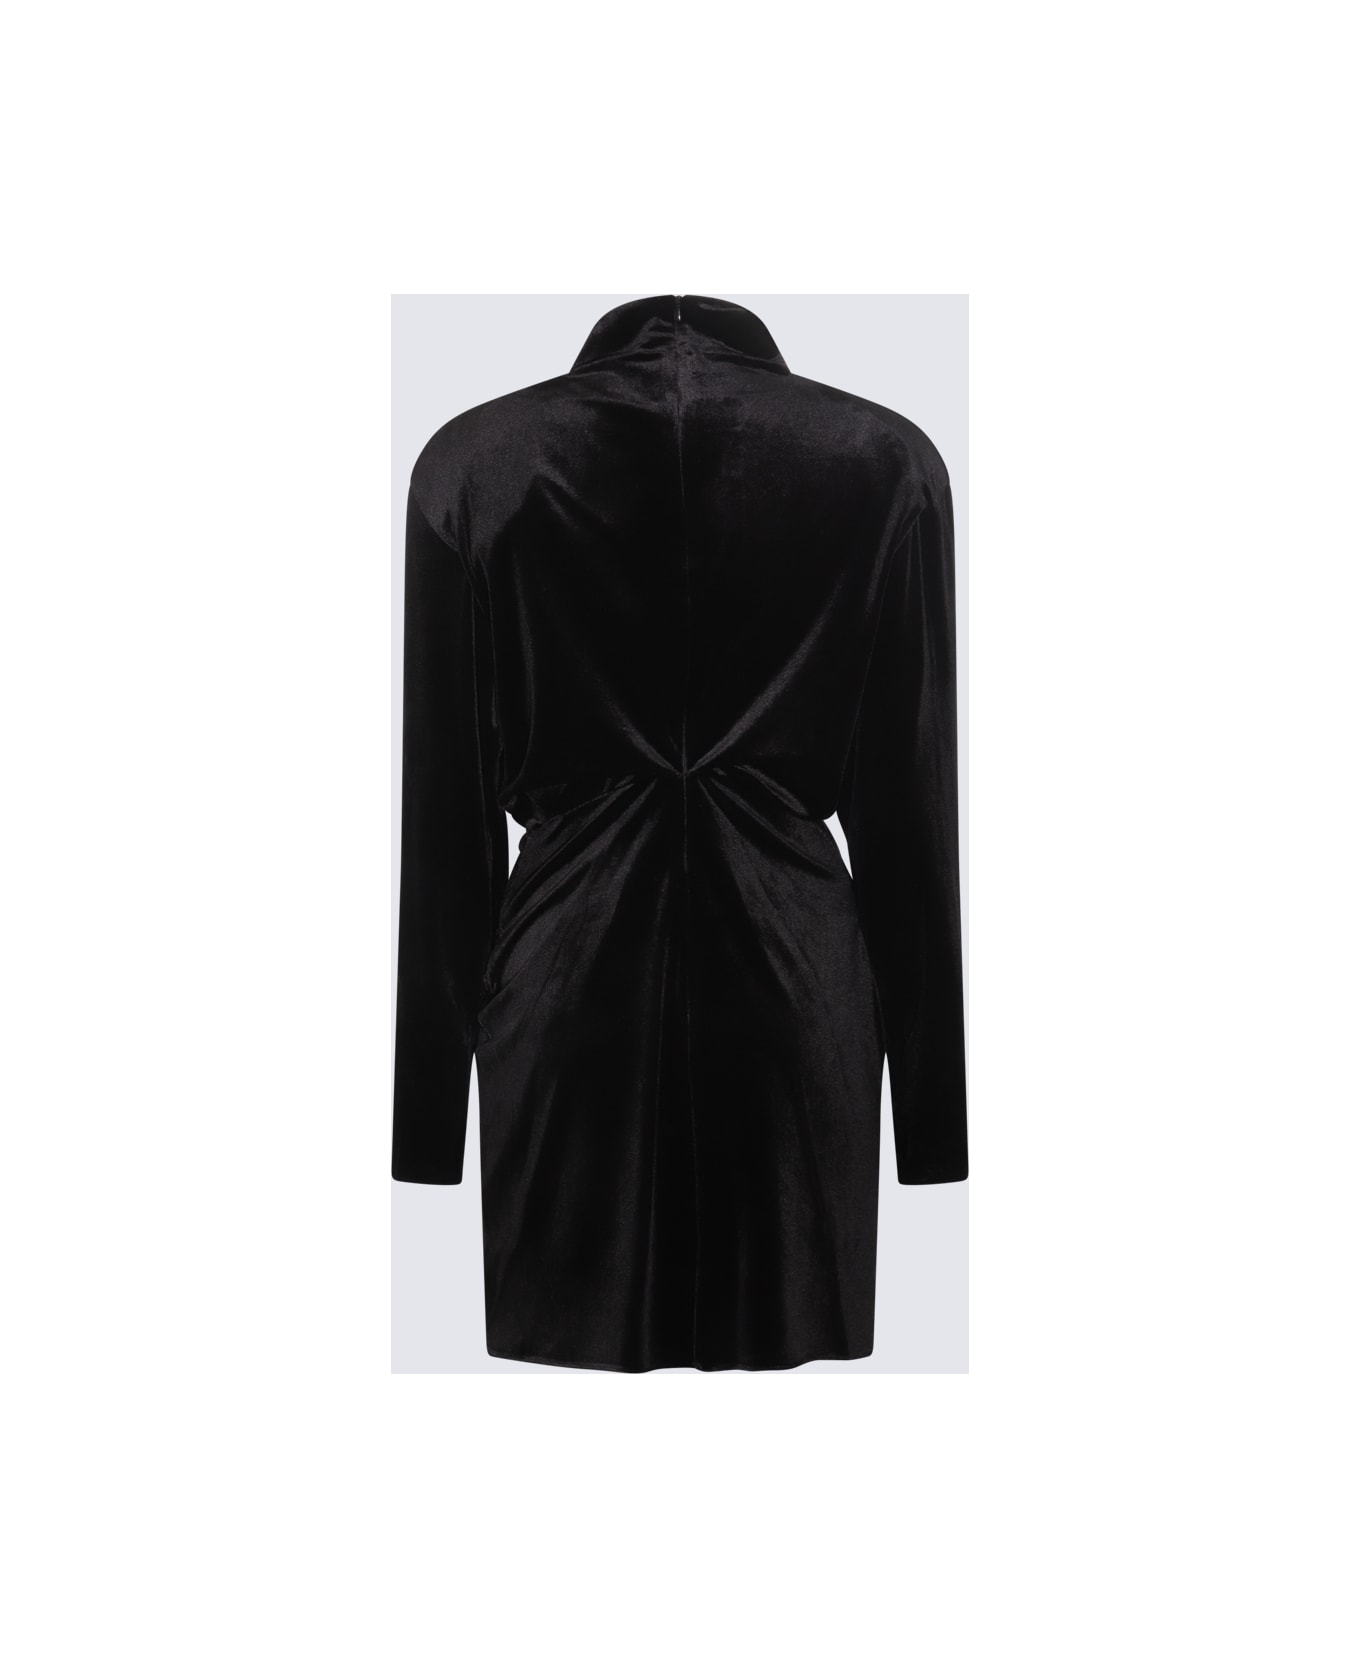 NEW ARRIVALS Black Mini Dress